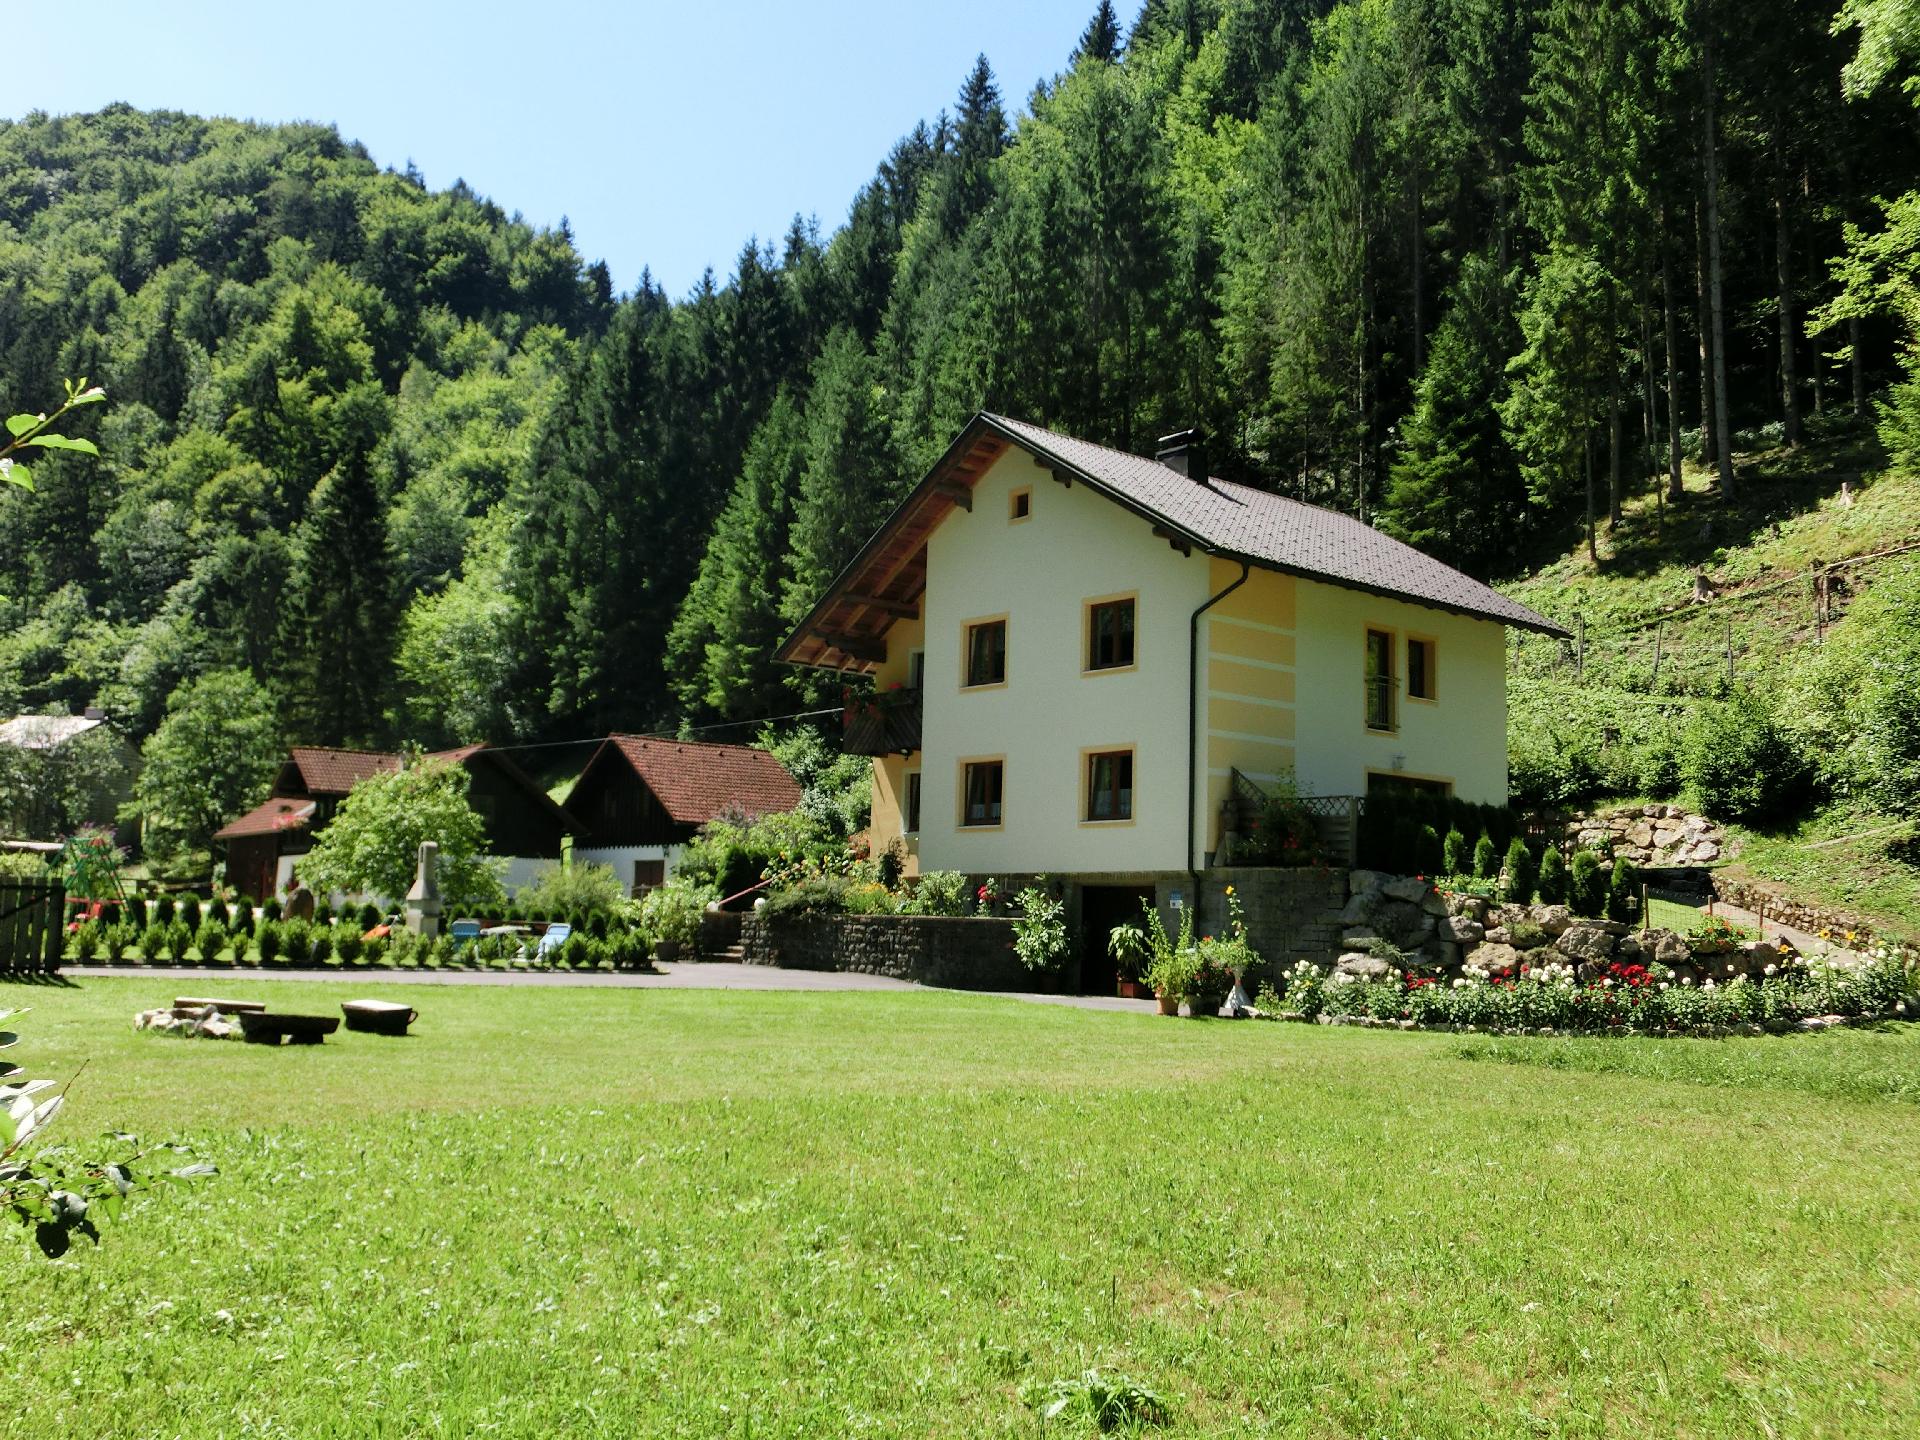 Ferienwohnung EULENRAST - Urlaub in der Natur Ferienhaus in Österreich